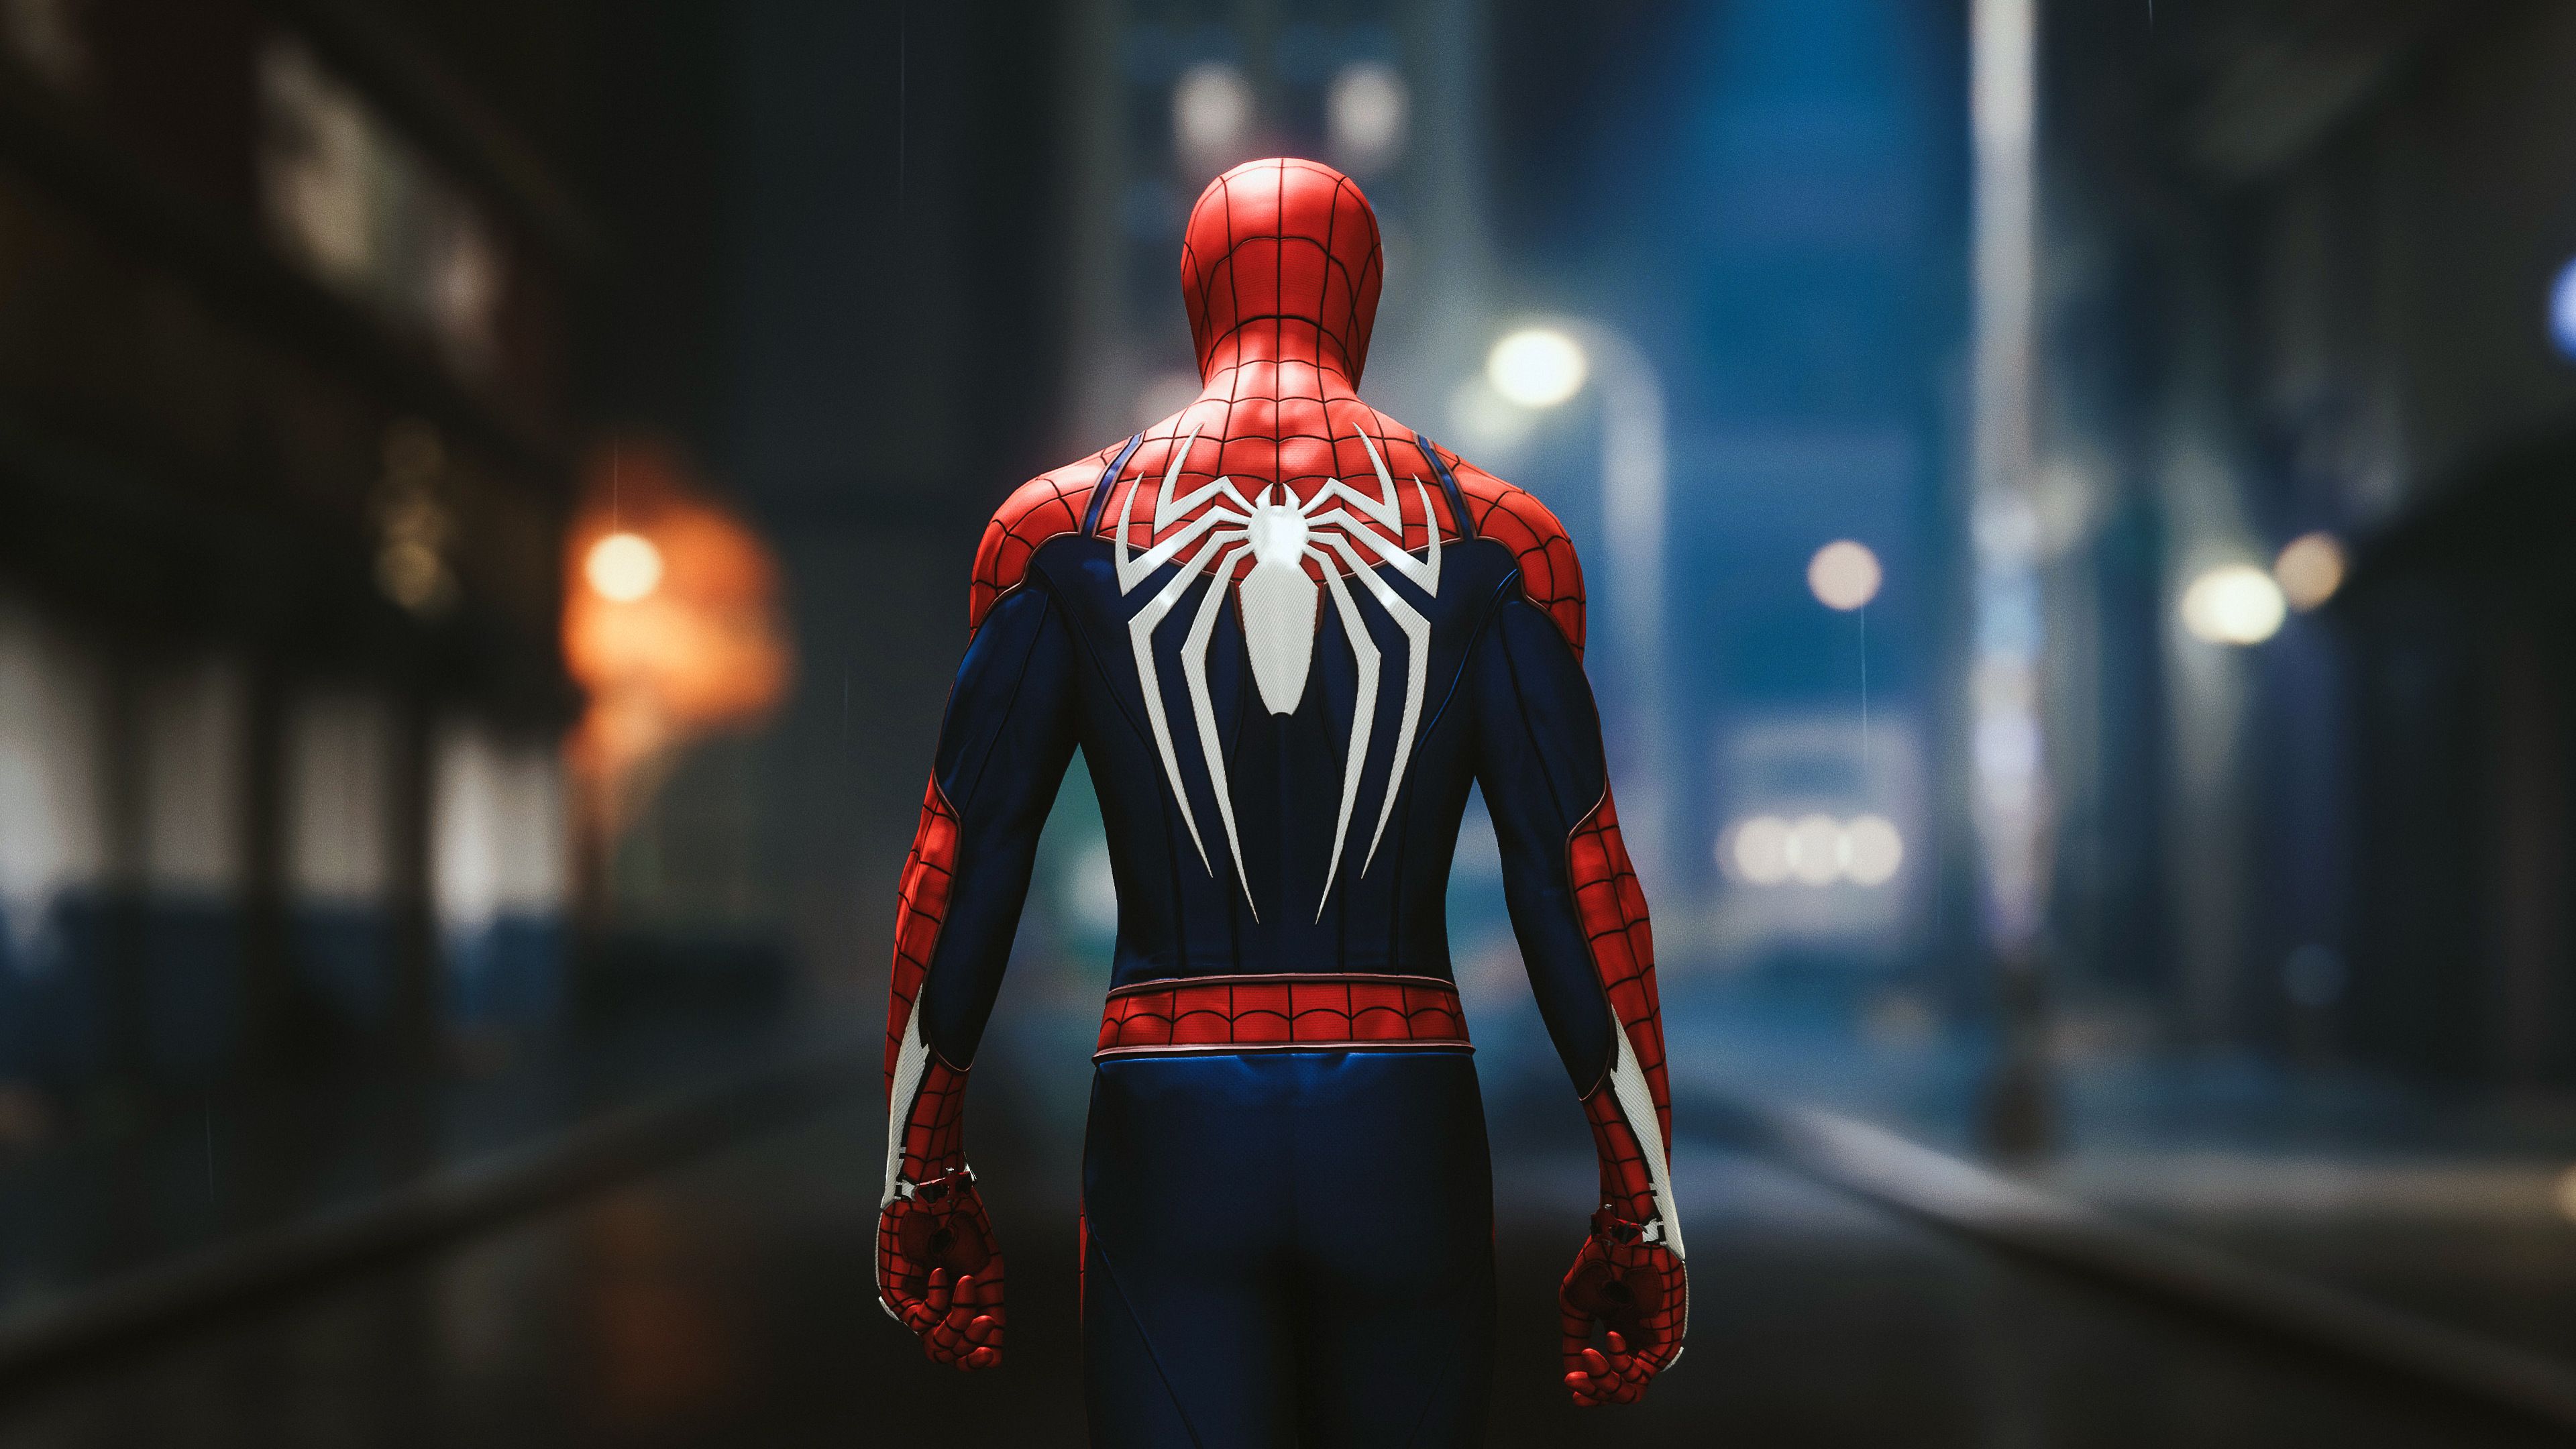 Nếu bạn yêu thích nhân vật Spider Man, hình nền liên quan đến anh ta chắc chắn sẽ khiến bạn thích thú! Bạn có thể tìm thấy những hình ảnh tuyệt đẹp về Spider Man trên internet, đặc biệt là hình nền. Hãy cập nhật cho màn hình máy tính của bạn bằng những bức ảnh độc đáo về Spider Man ngay hôm nay!